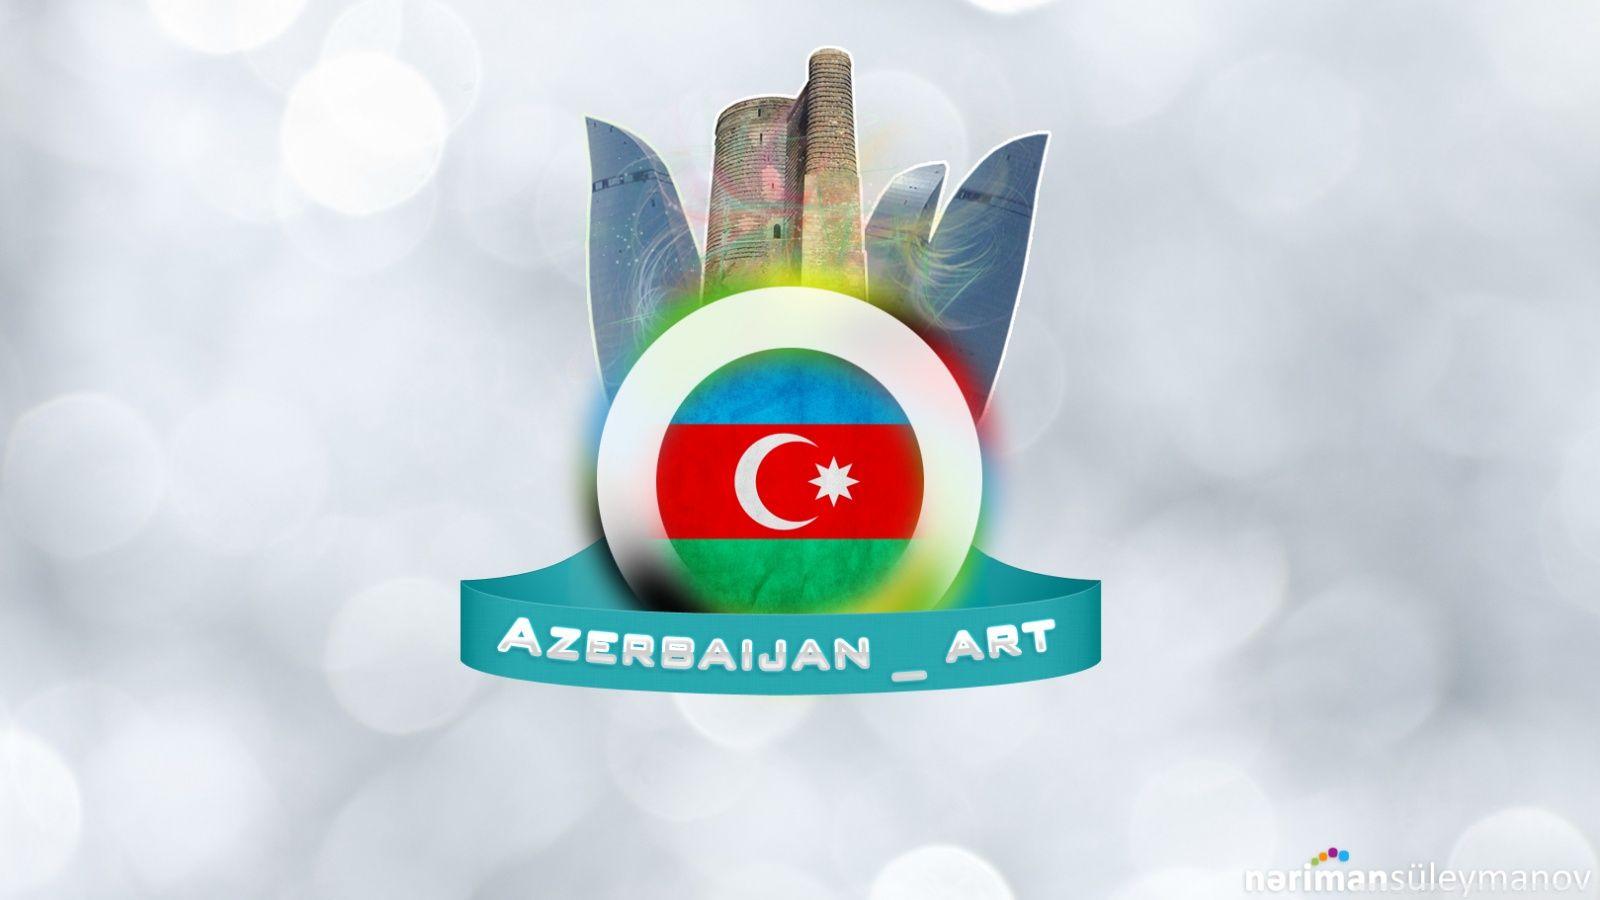 Azerbaijan art 2K desk 4K wallpapers Widescreen High Definition